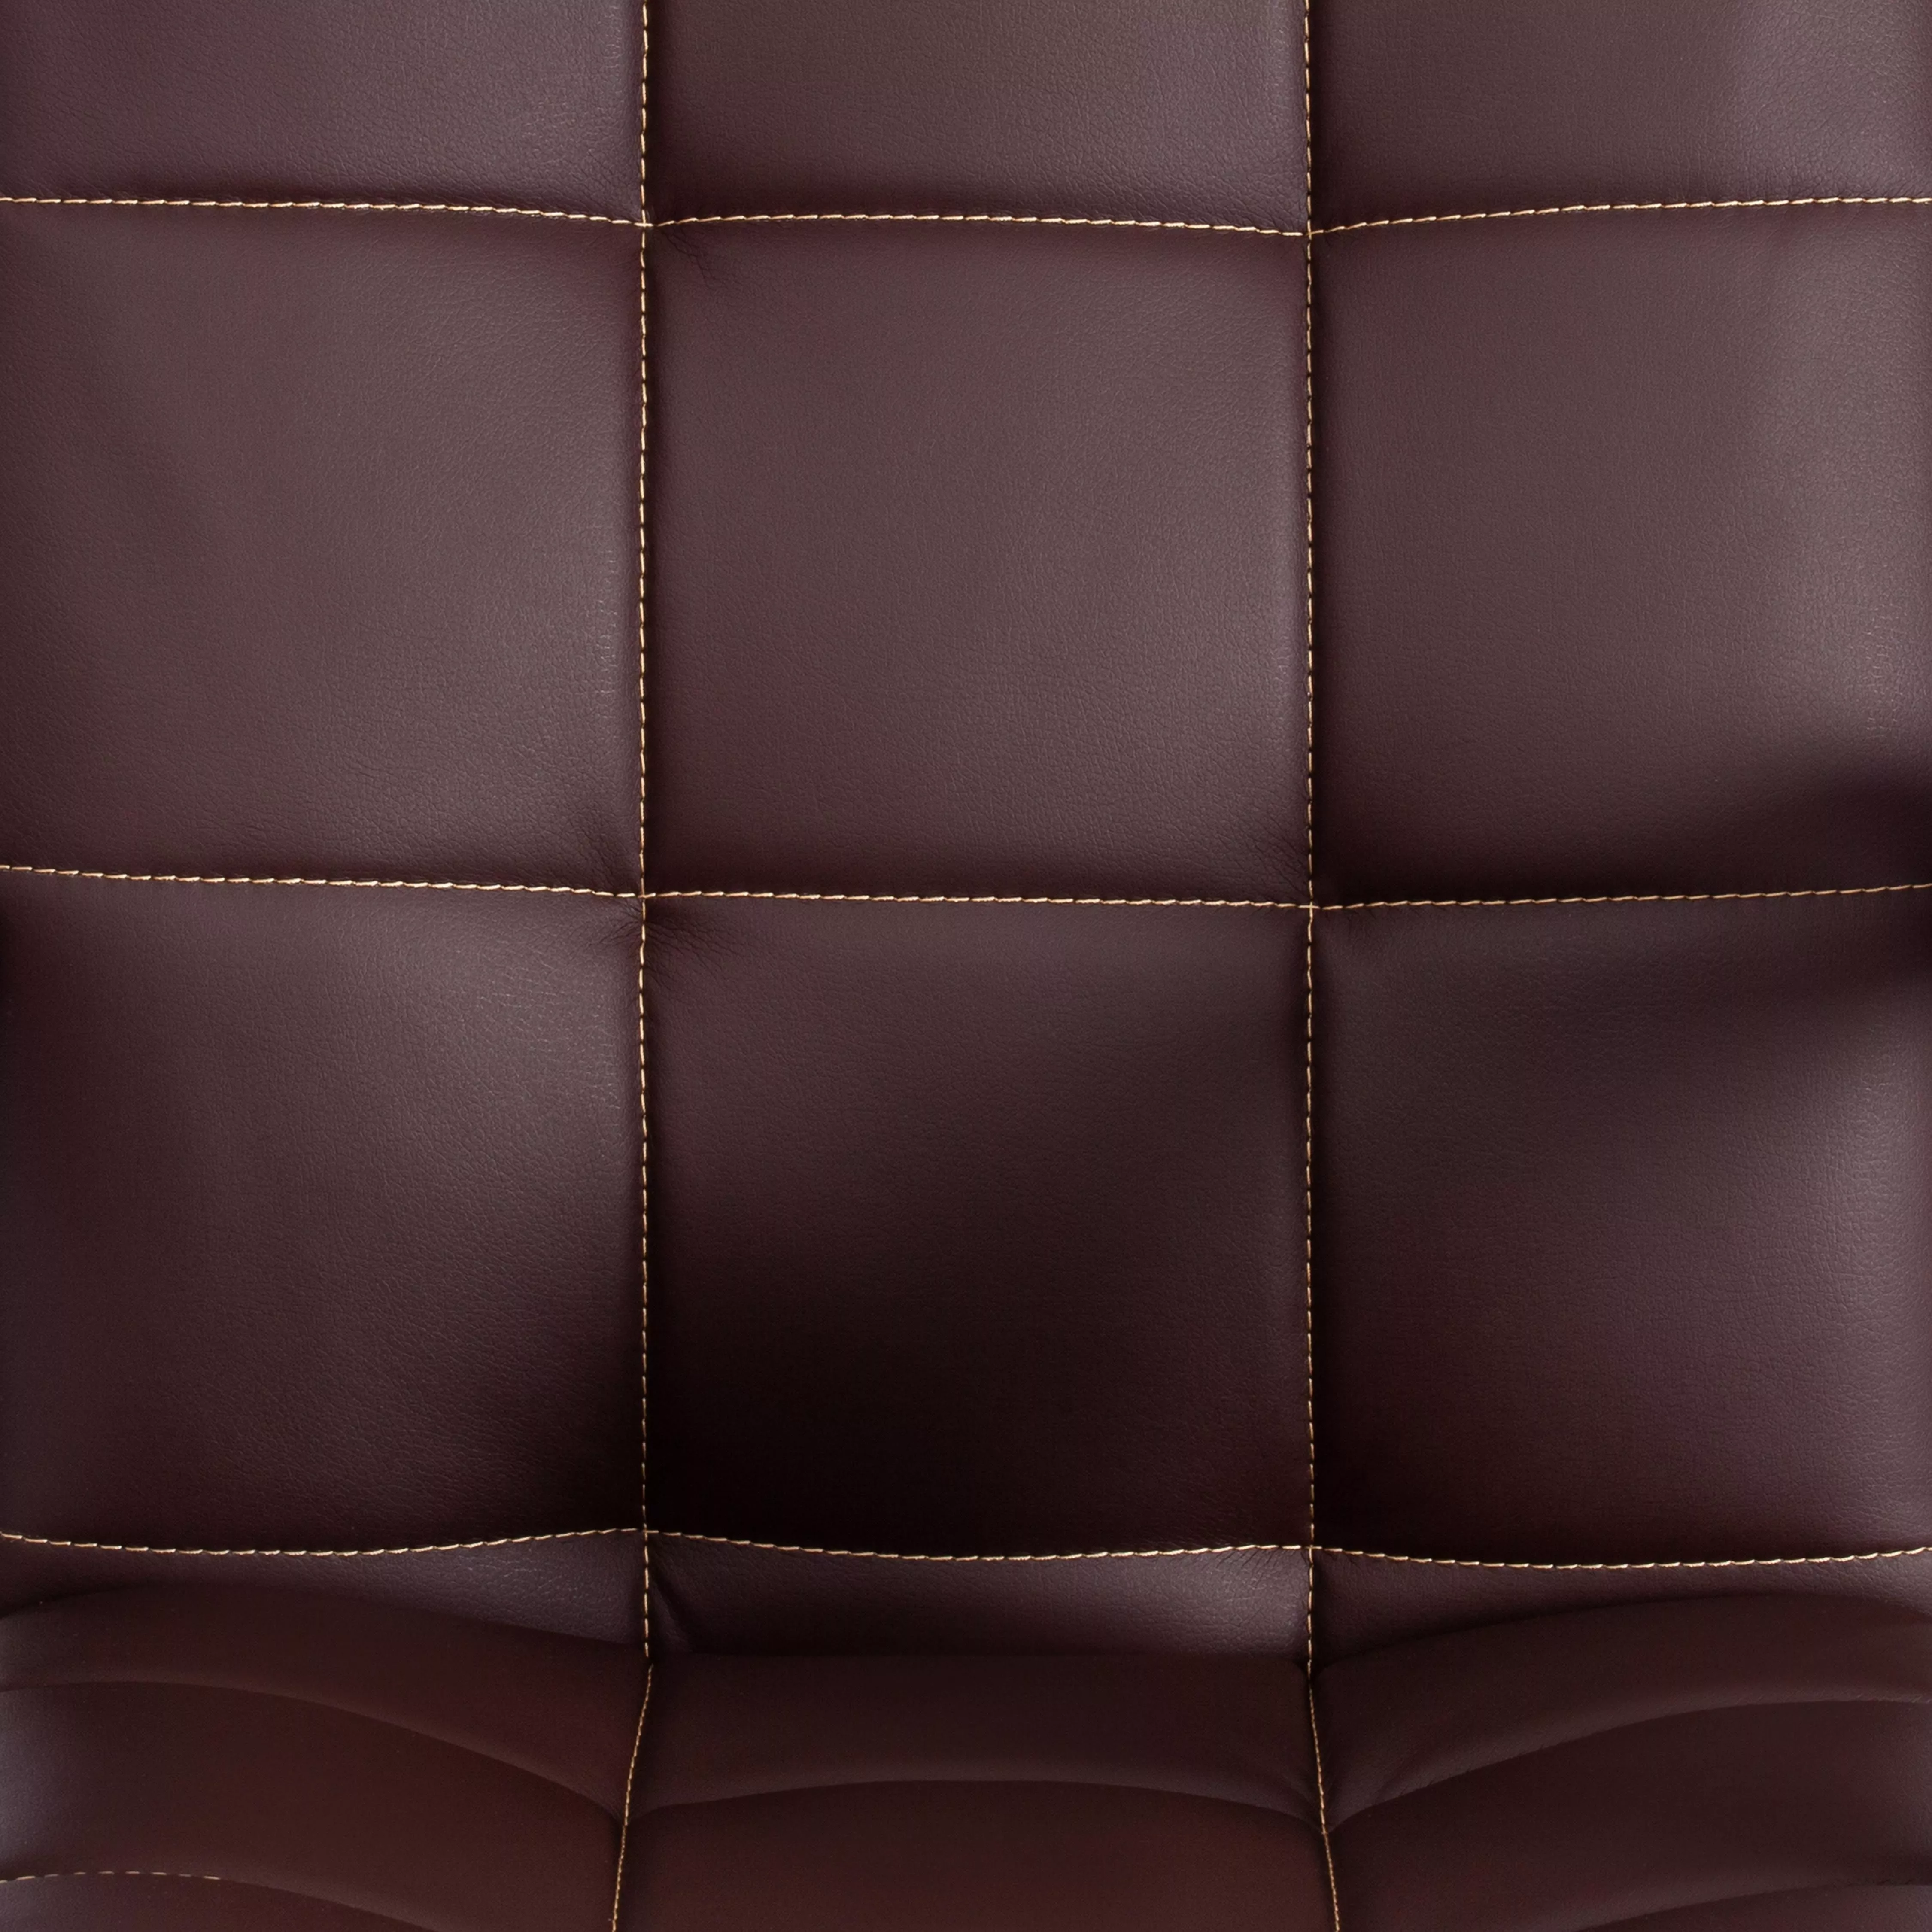 Кресло TRENDY (22) экокожа коричневый / бронзовый